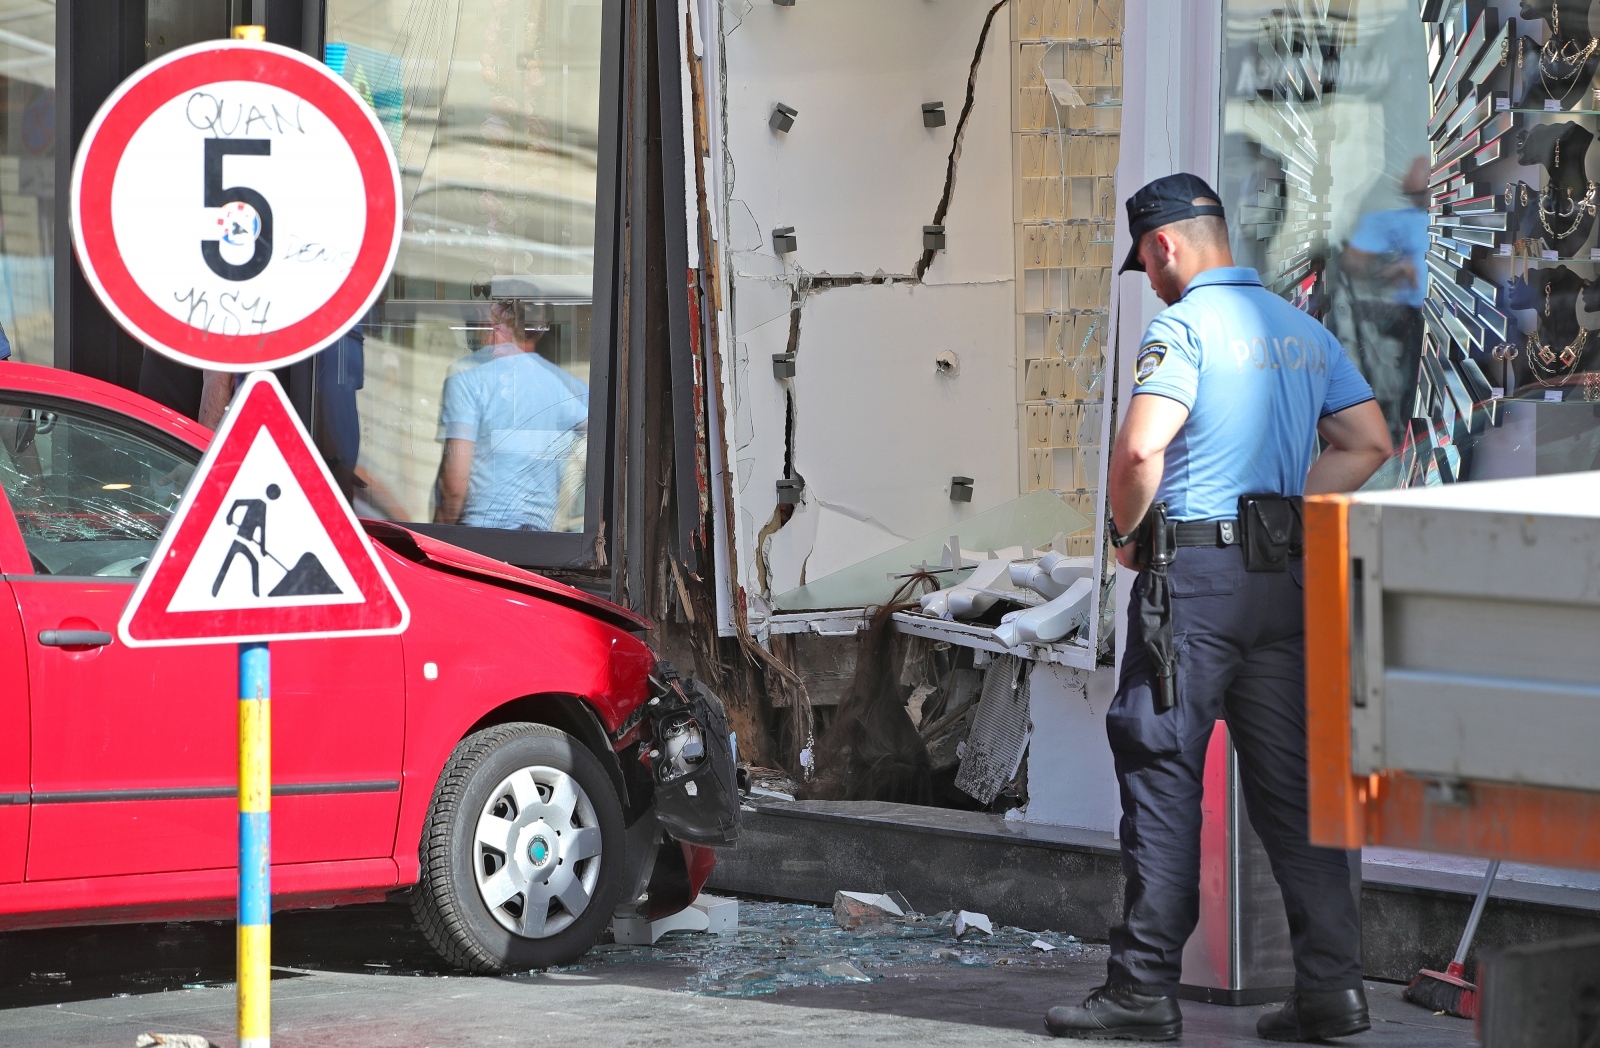 Kako su rekli iz PU zagrebačke, nesreća se dogodila oko 16:30, a osoba koja je upravljala vozilom je ozlijeđena te je prebačena u KBC Sestre milosrdnice